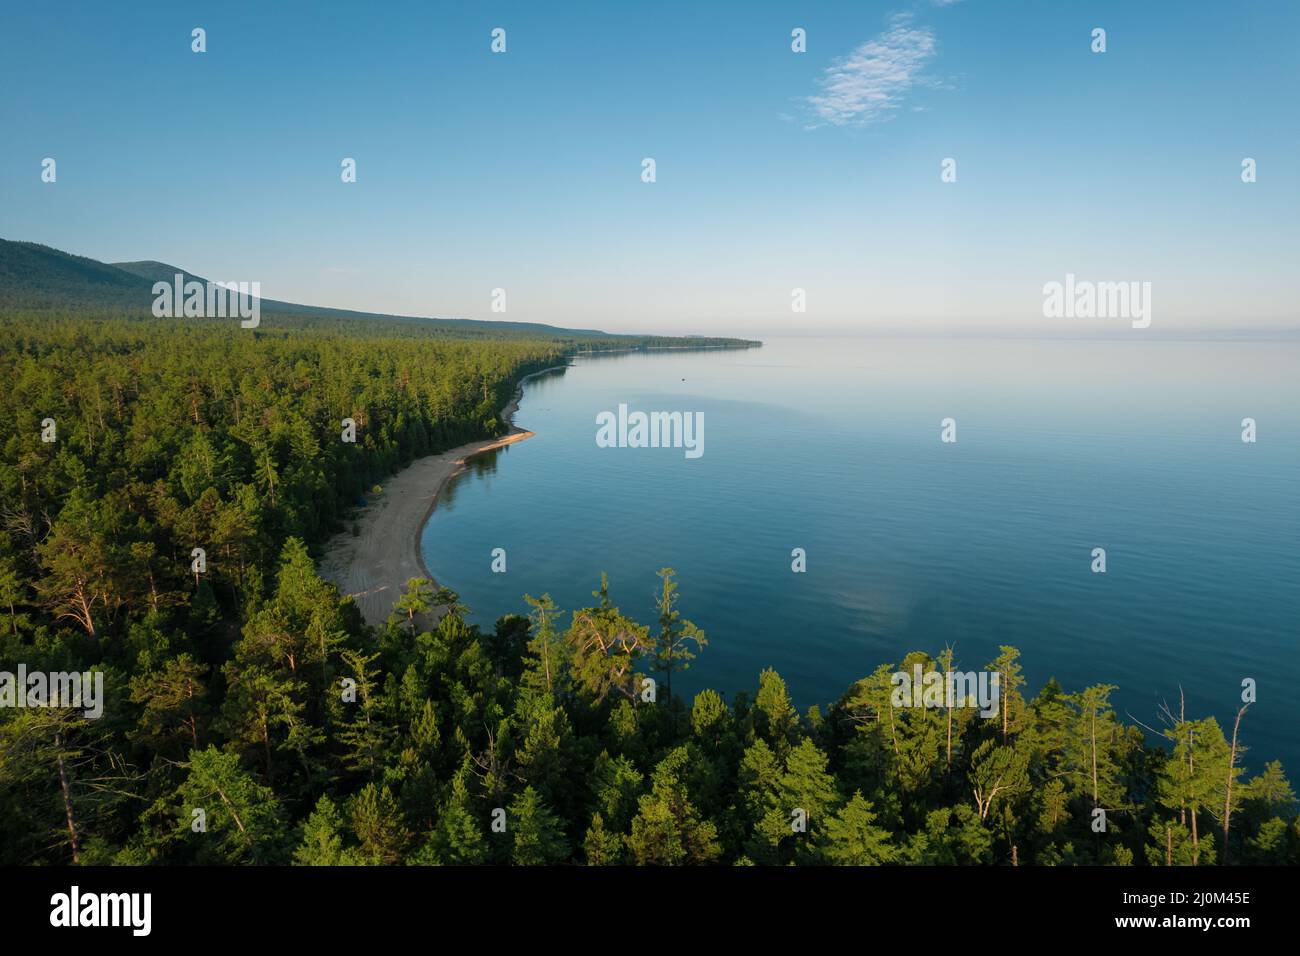 Imágenes de verano del lago Baikal es un lago de rift situado en el sur de Siberia, Rusia. Vista del paisaje veraniego del lago Baikal. Drones Foto de stock